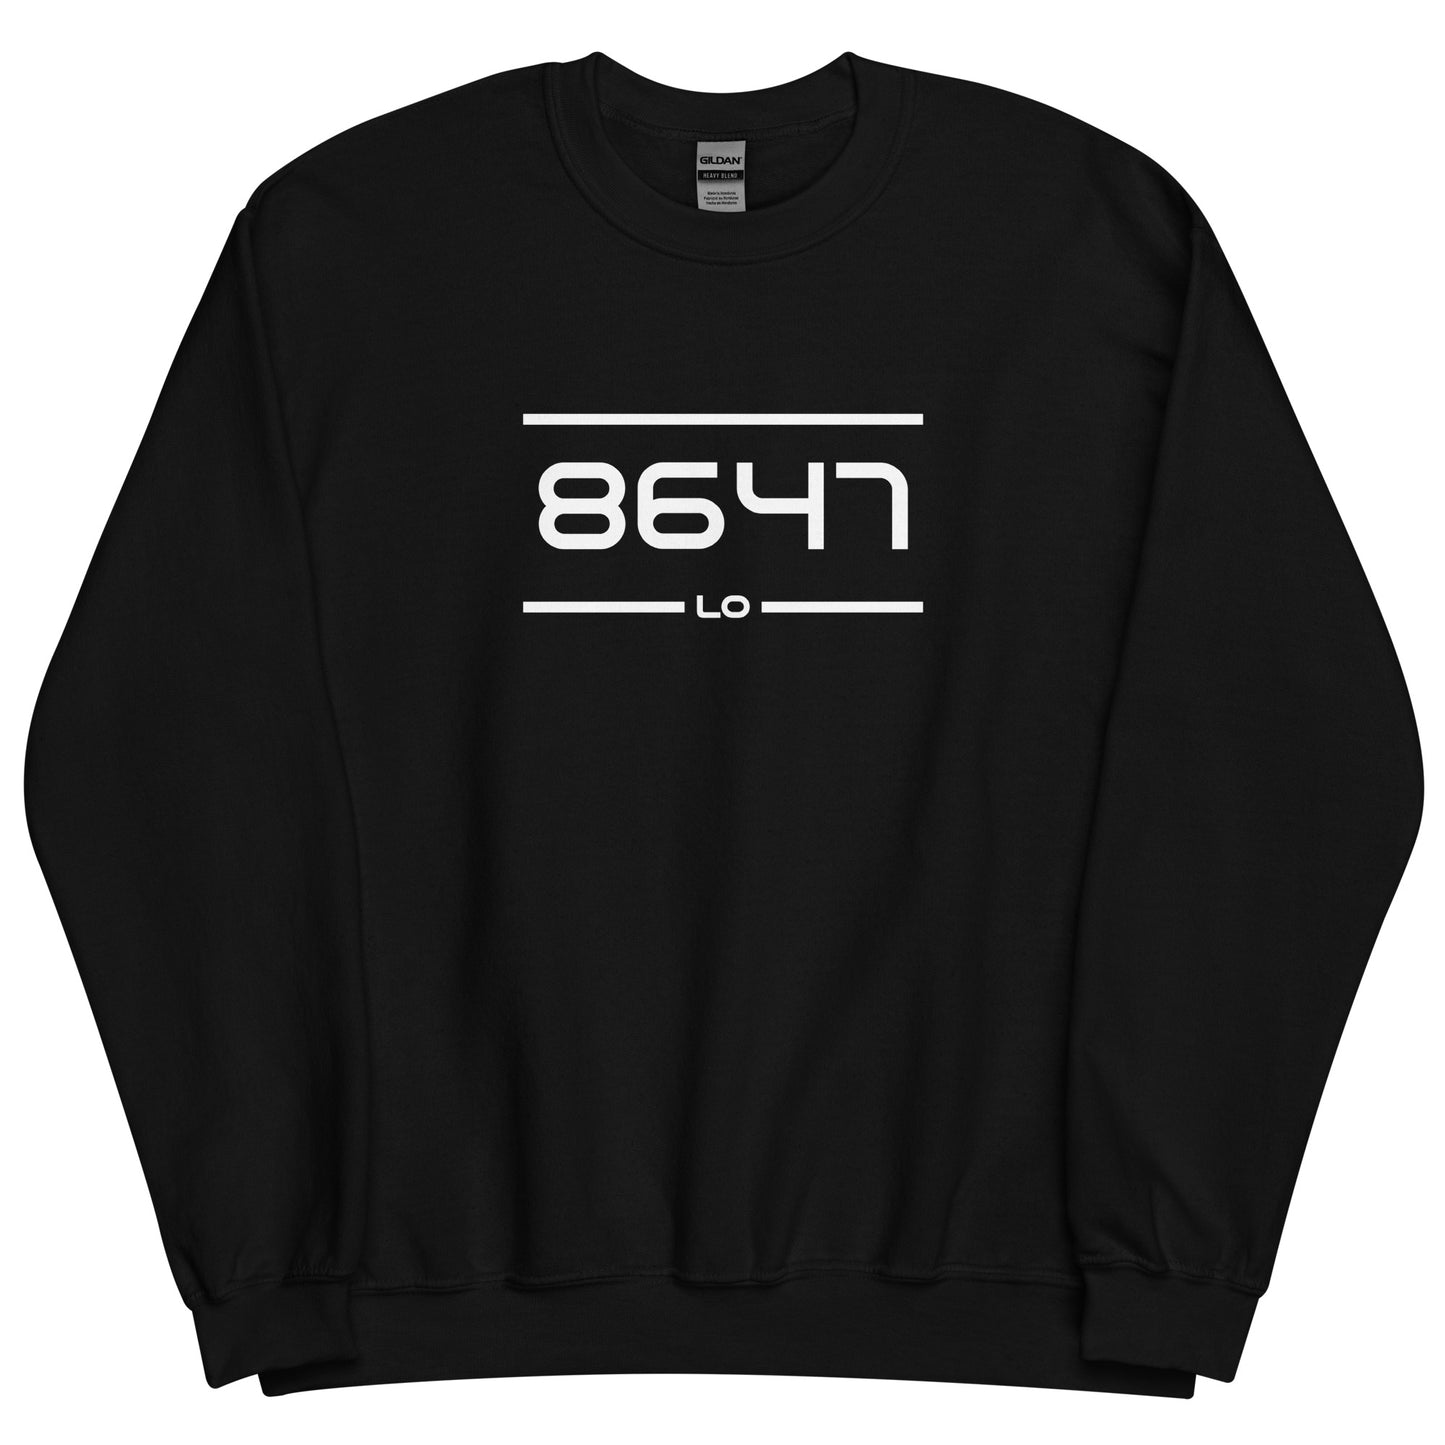 Sweater - 8647 - Lo (M/V)